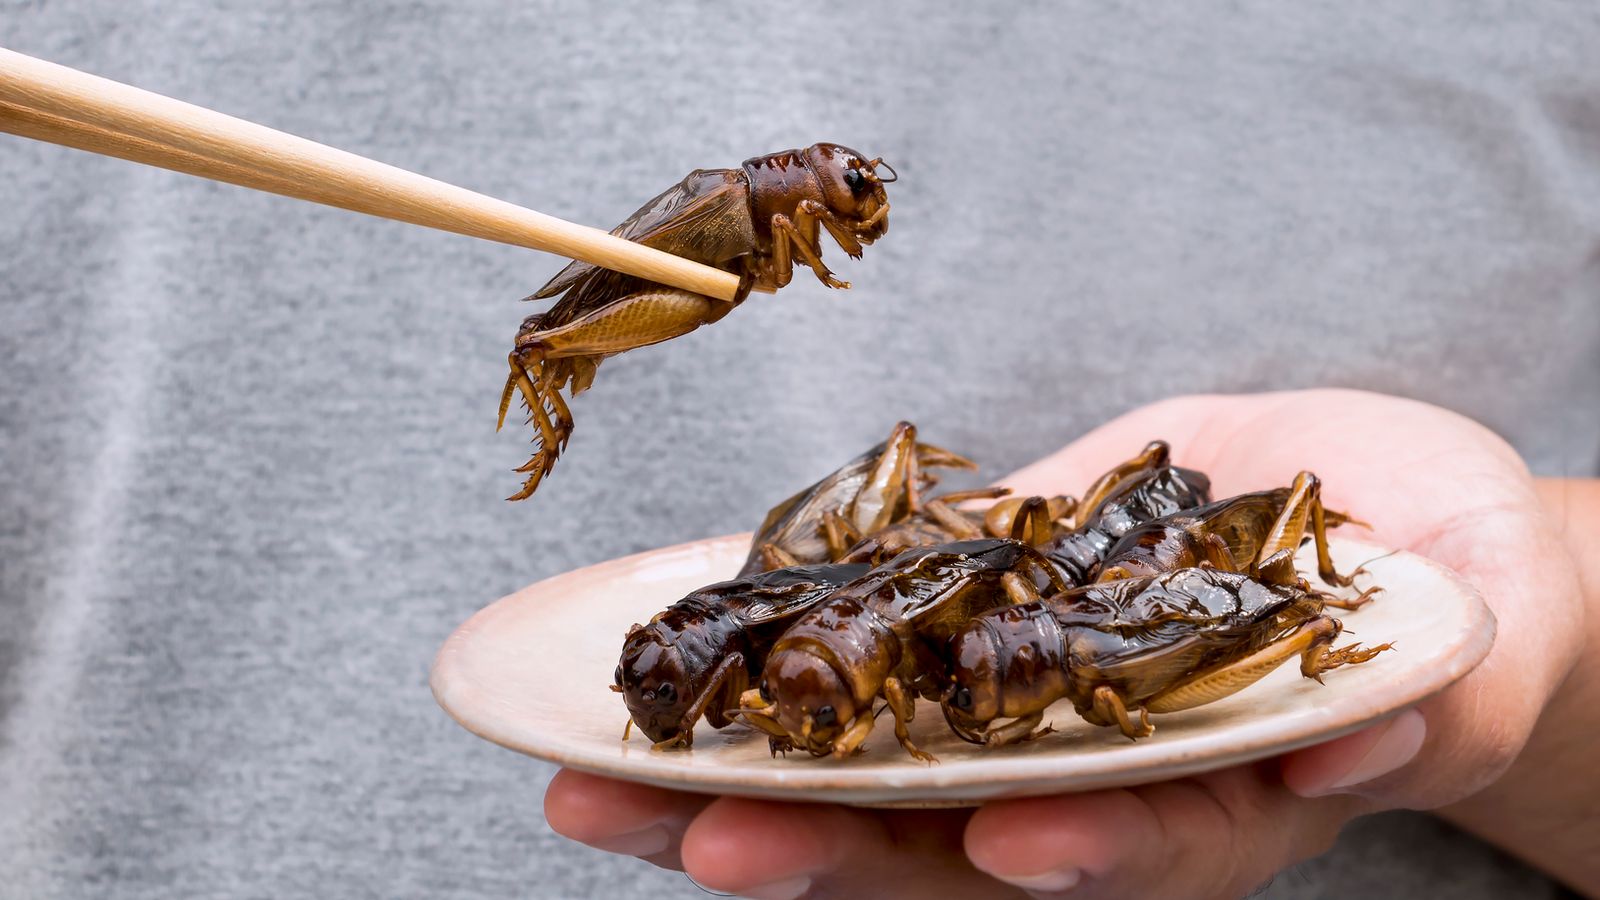 Le « facteur de dégoût » doit être surmonté si la nourriture pour insectes respectueuse de la planète devient courante |  Actualités scientifiques et technologiques